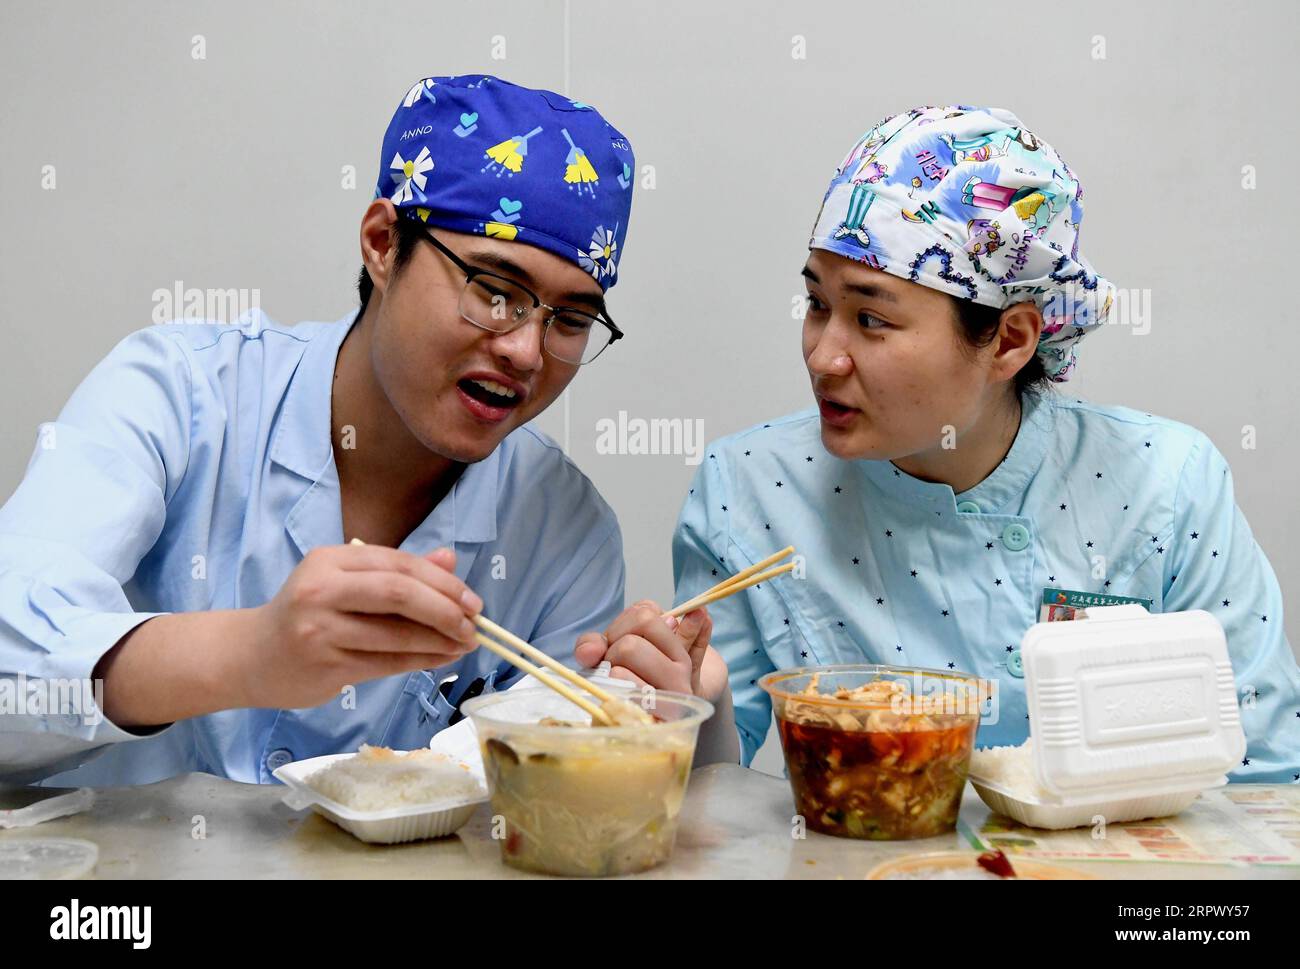 200502 -- ZHENGZHOU, 2 de mayo de 2020 -- Las enfermeras Liu Guangyao L y Qiao Bing almorzan durante las vacaciones de trabajo en el Tercer Hospital Popular de Henan en Zhengzhou, provincia de Henan, en el centro de China, el 26 de abril de 2020. Liu Guangyao y Qiao Bing son las enfermeras de la UCI del hospital, que son un par de amantes nacidos en los años noventa. Después del brote de la pandemia de COVID-19, ambos presentaron una solicitud para ayudar a luchar contra la enfermedad en Wuhan, la capital de Hubei, China central. El 2 de febrero, Liu y Qiao, ambos incluidos en un equipo médico provincial de ayuda de Wuhan, salieron de Henan para la ciudad donde lucharon contra la novela c Foto de stock